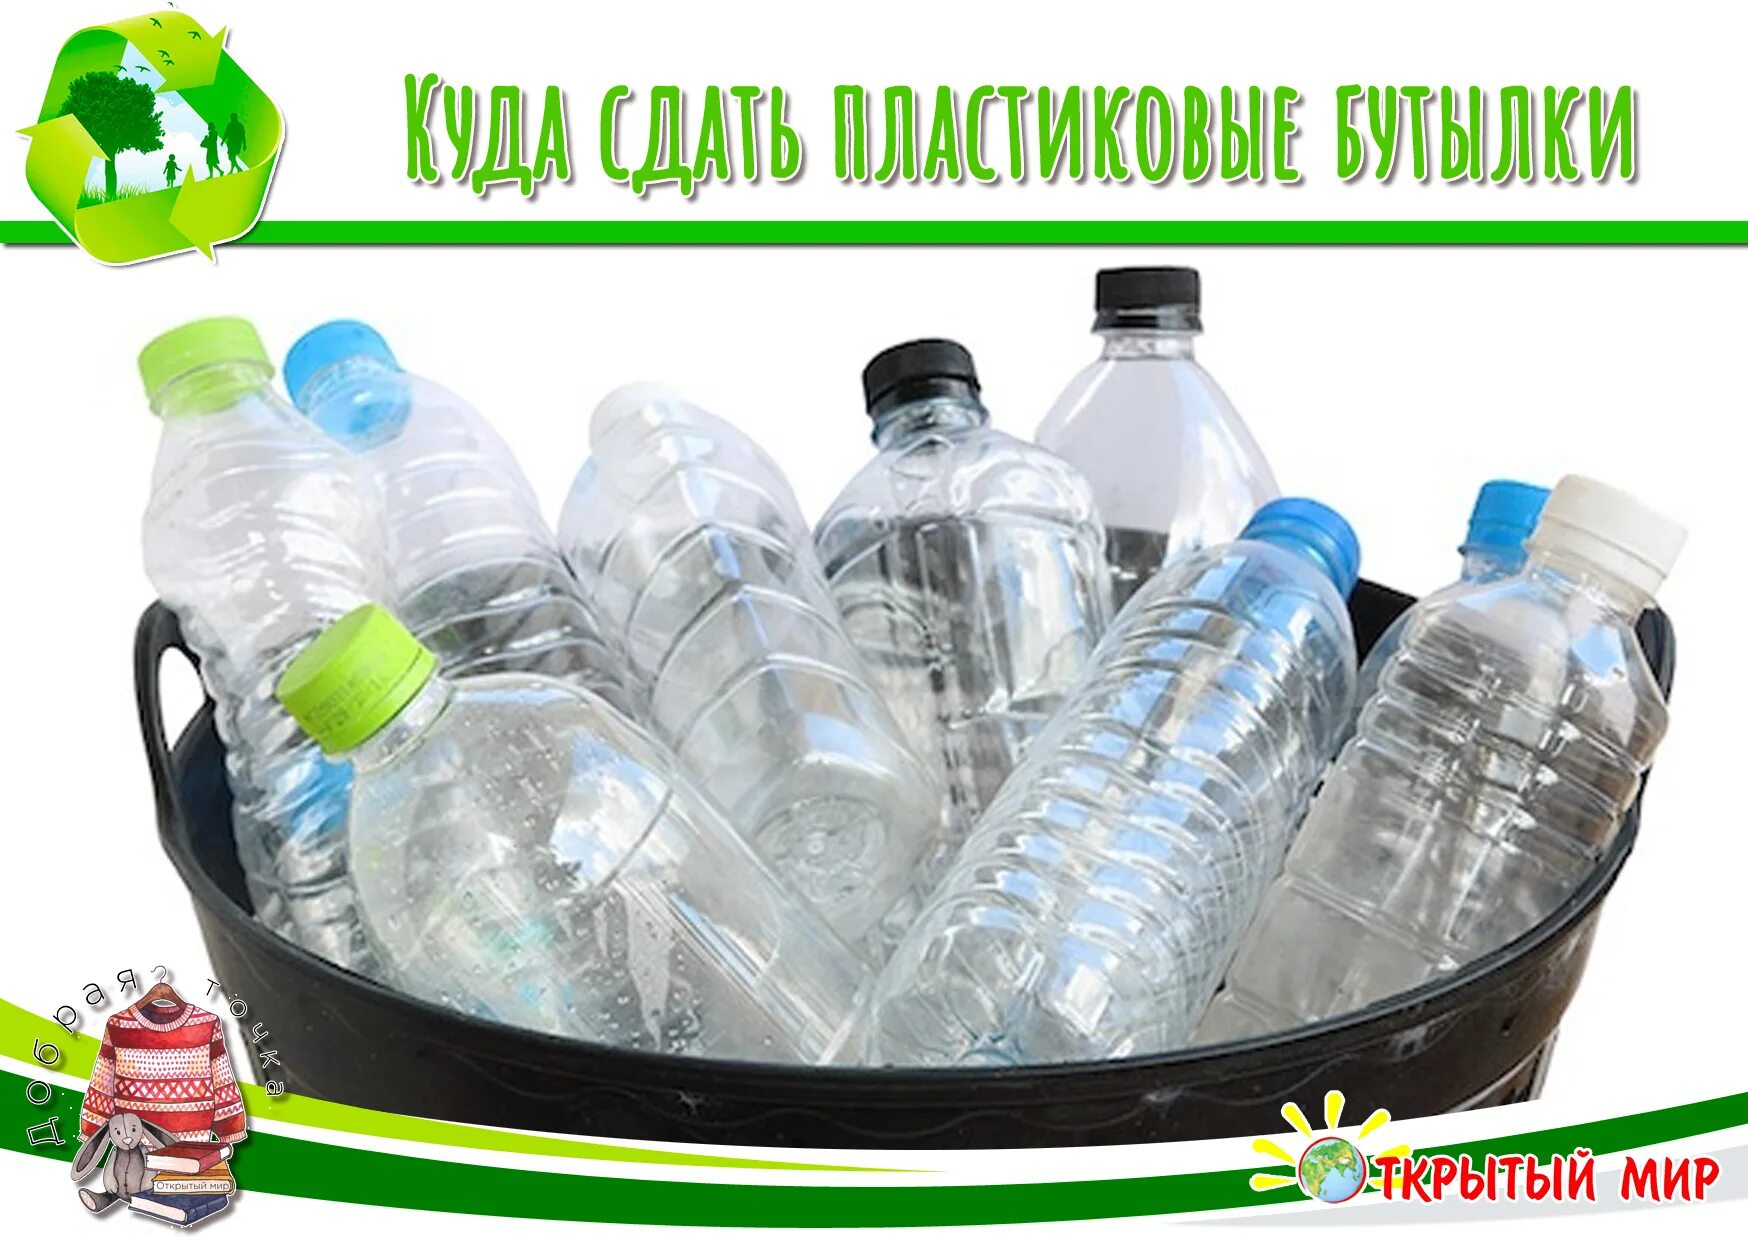 Где сдать пластиковые бутылки в москве. Пластиковая бутылка. Сбор пластиковых бутылок. Собираем пластиковые бутылки. Сдать бутылки пластиковые.